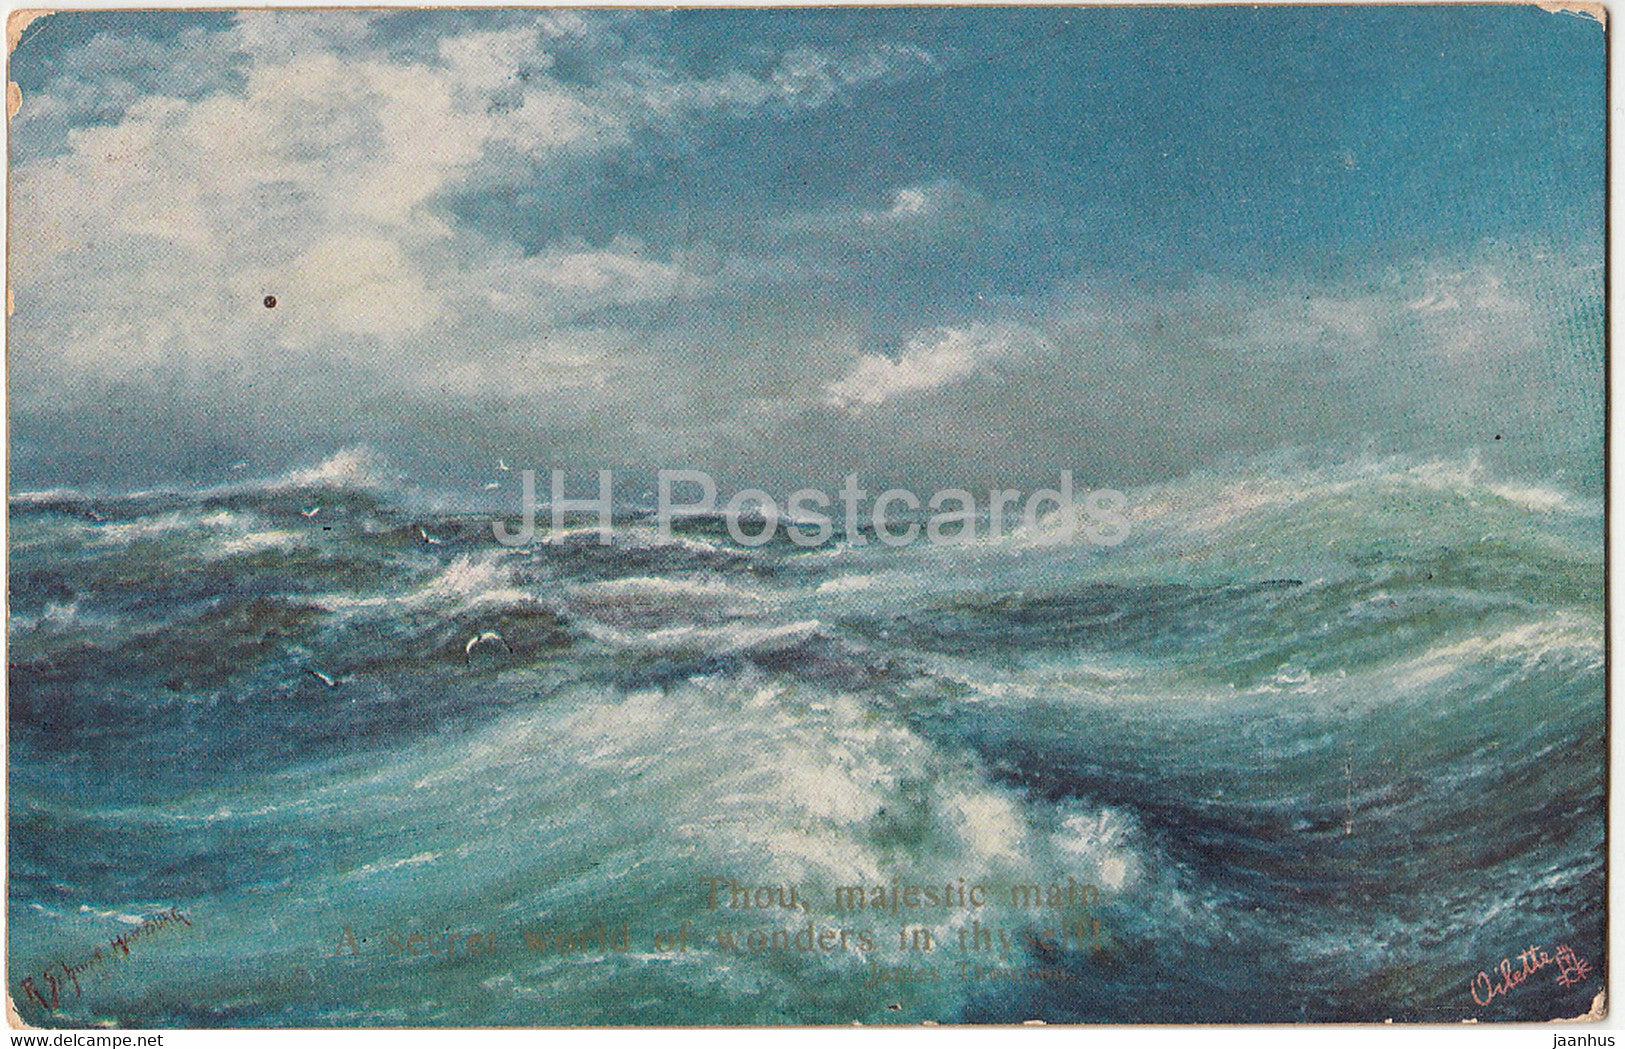 Stormy Sea - Raphael Tuck - Oilette - 2884 - old postcard - 1911 - United Kingdom - used - JH Postcards